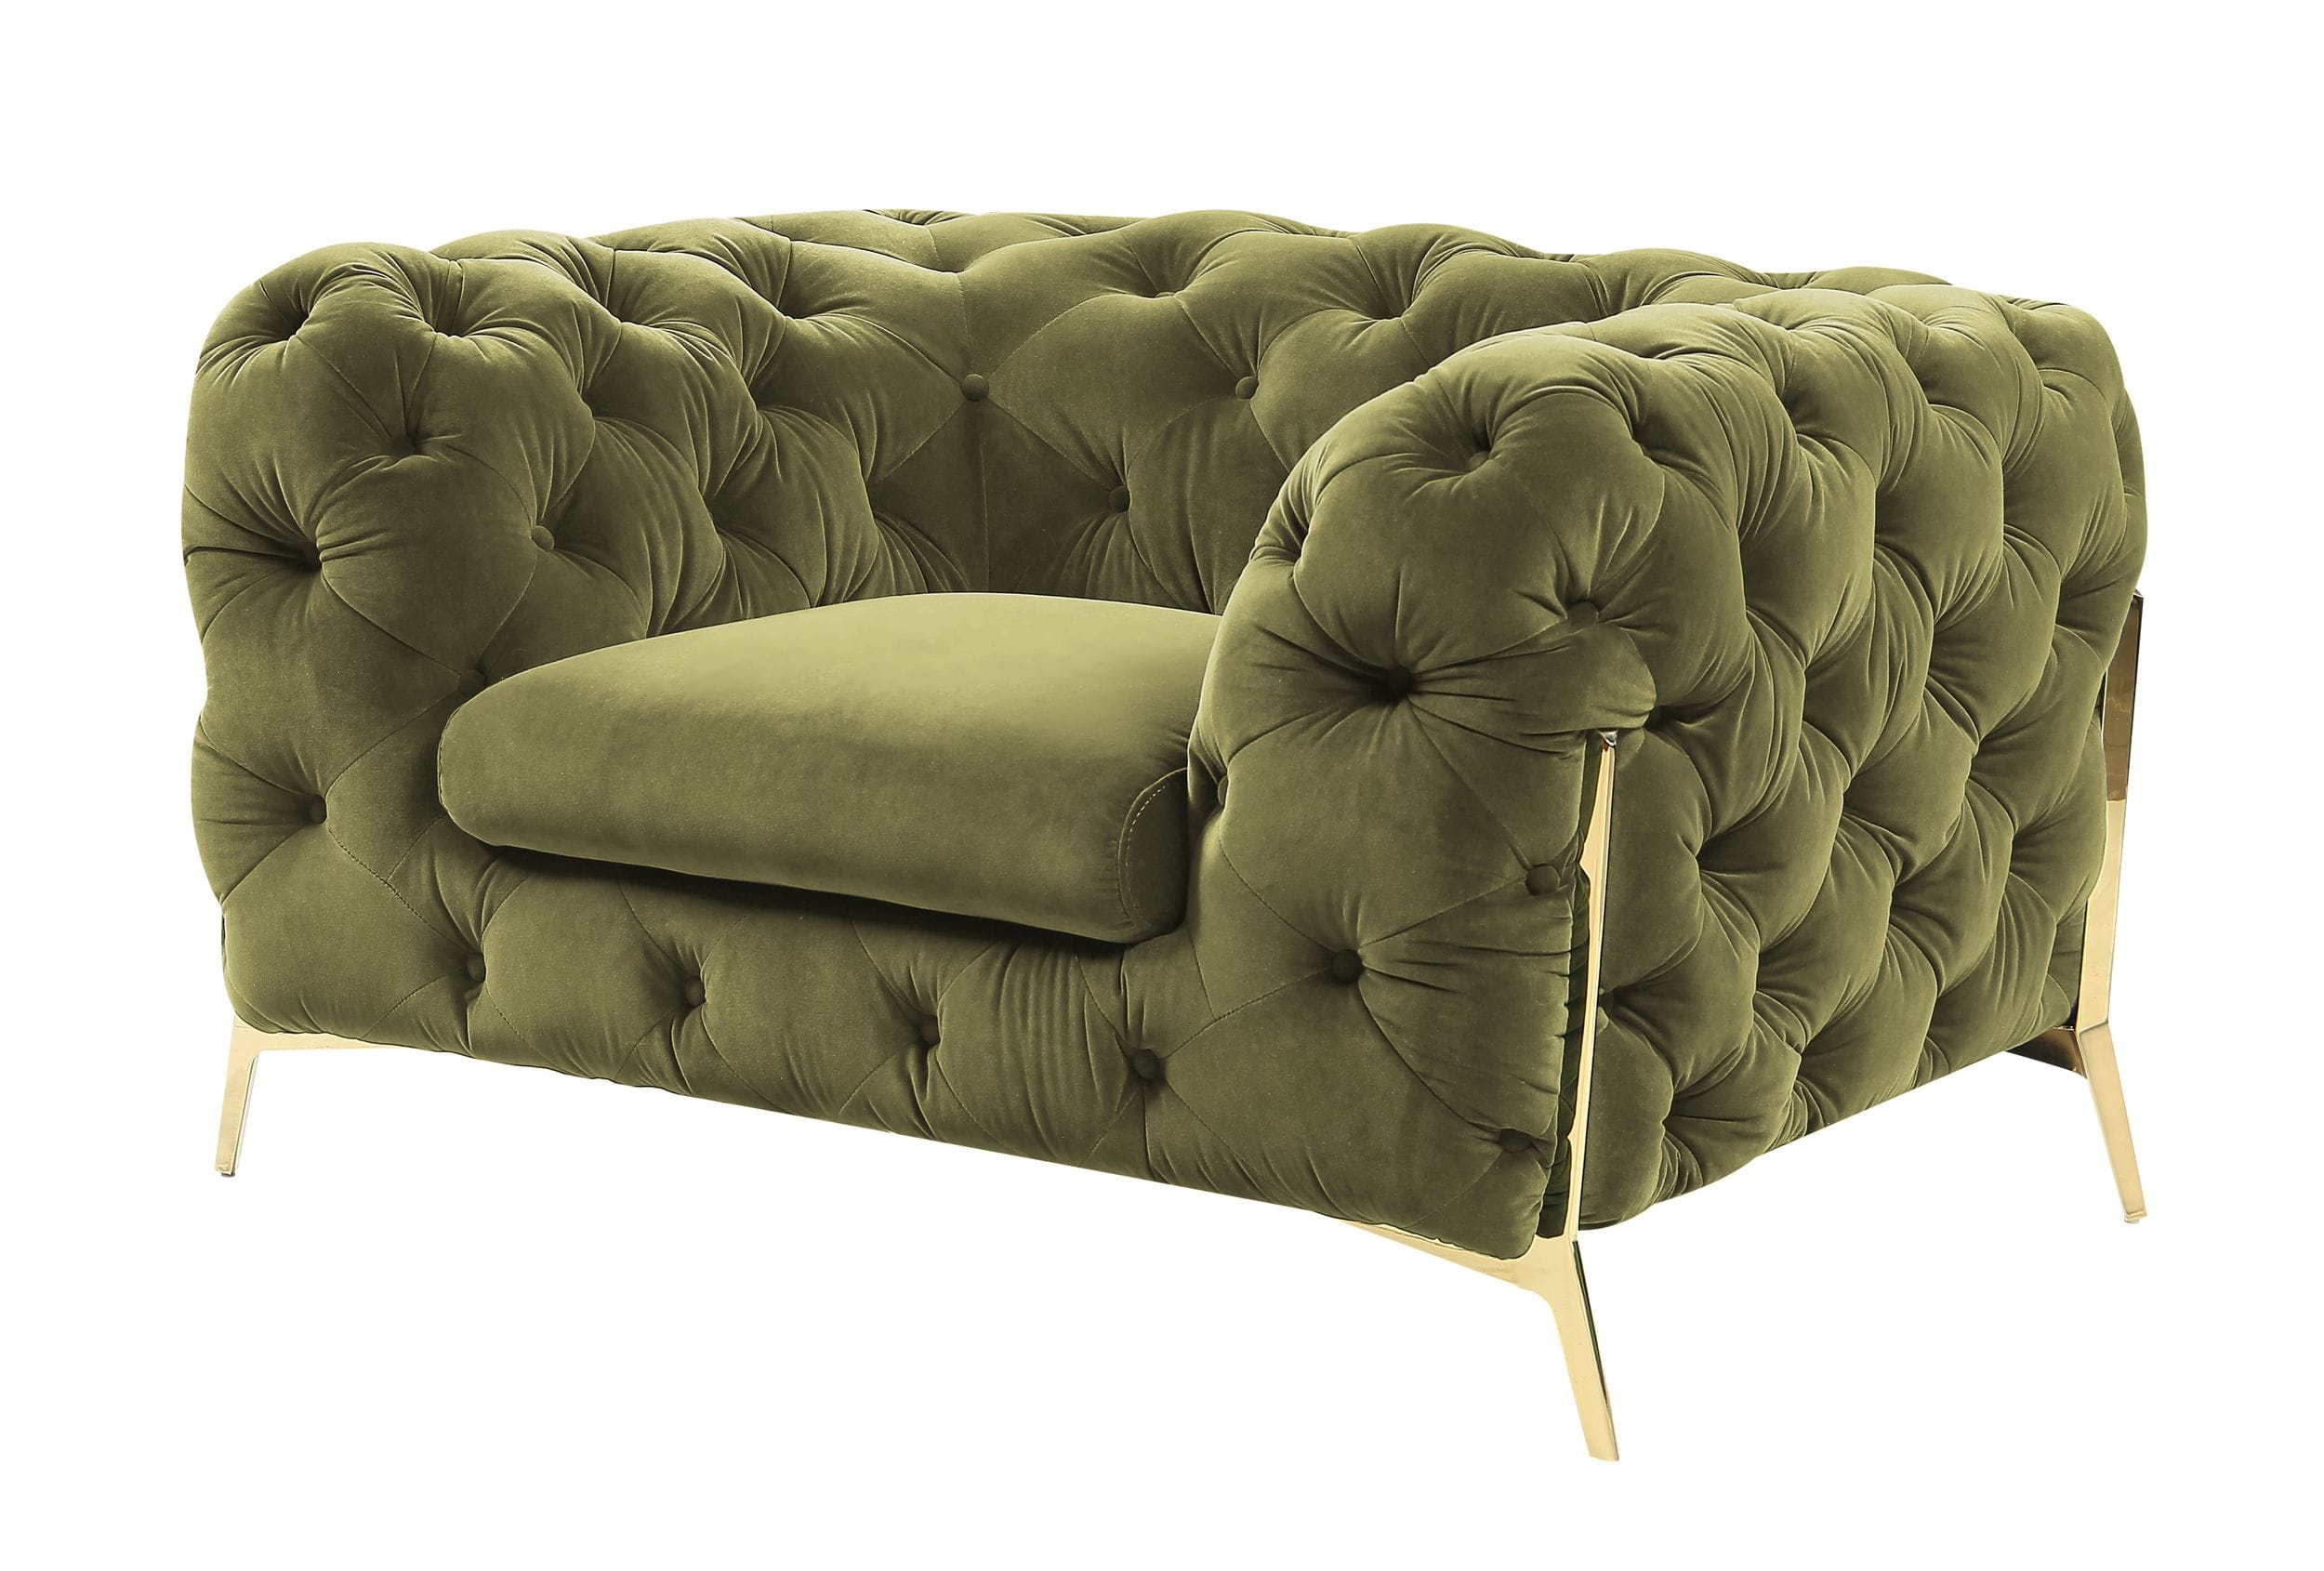 Divani Casa Sheila Green Fabric Chair | VIG Furniture